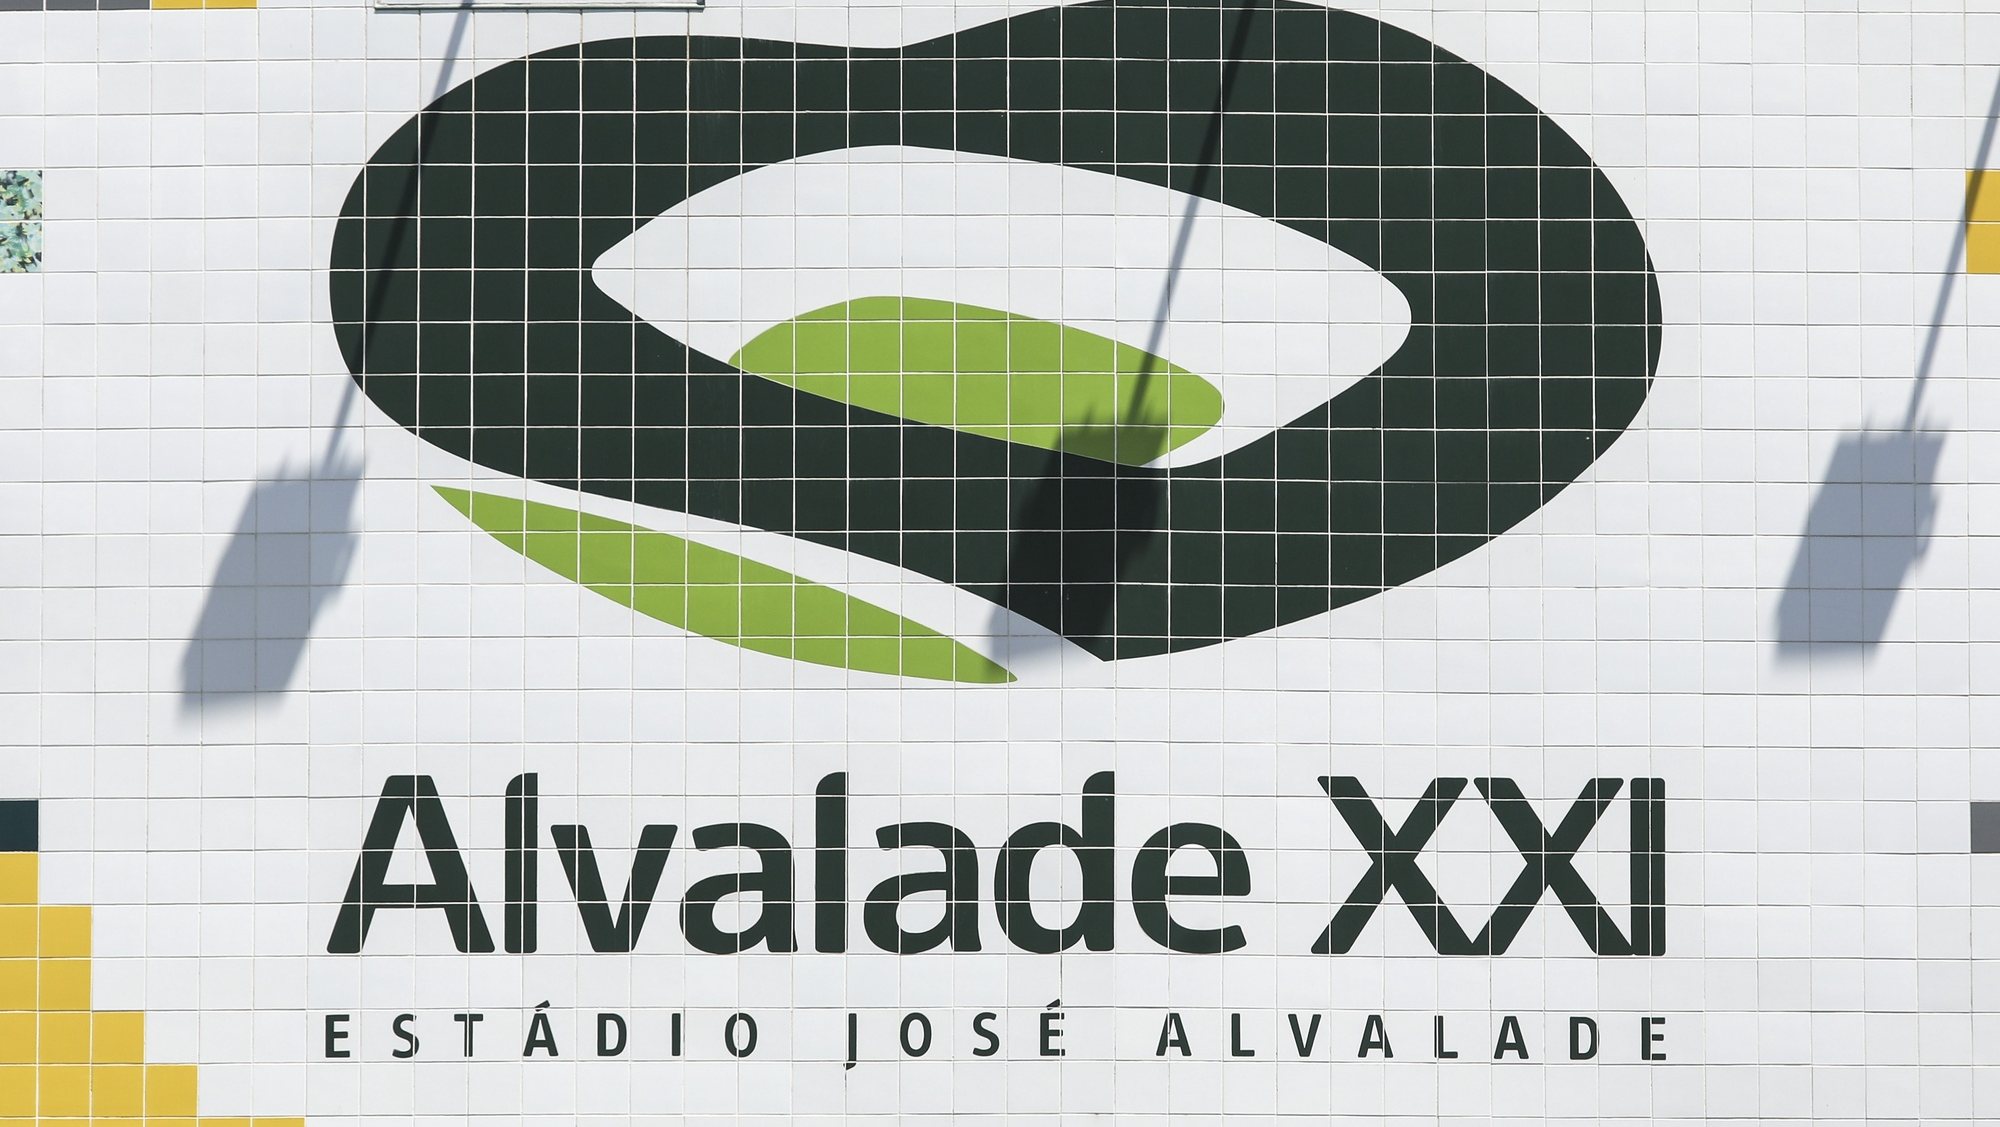 Simbolo do Sporting junto Estádio Alvalade XXI antigo Estádio José Alvalade, estádio do Sporting em Lisboa. 21 de maio de 2018. MIGUEL A. LOPES/LUSA